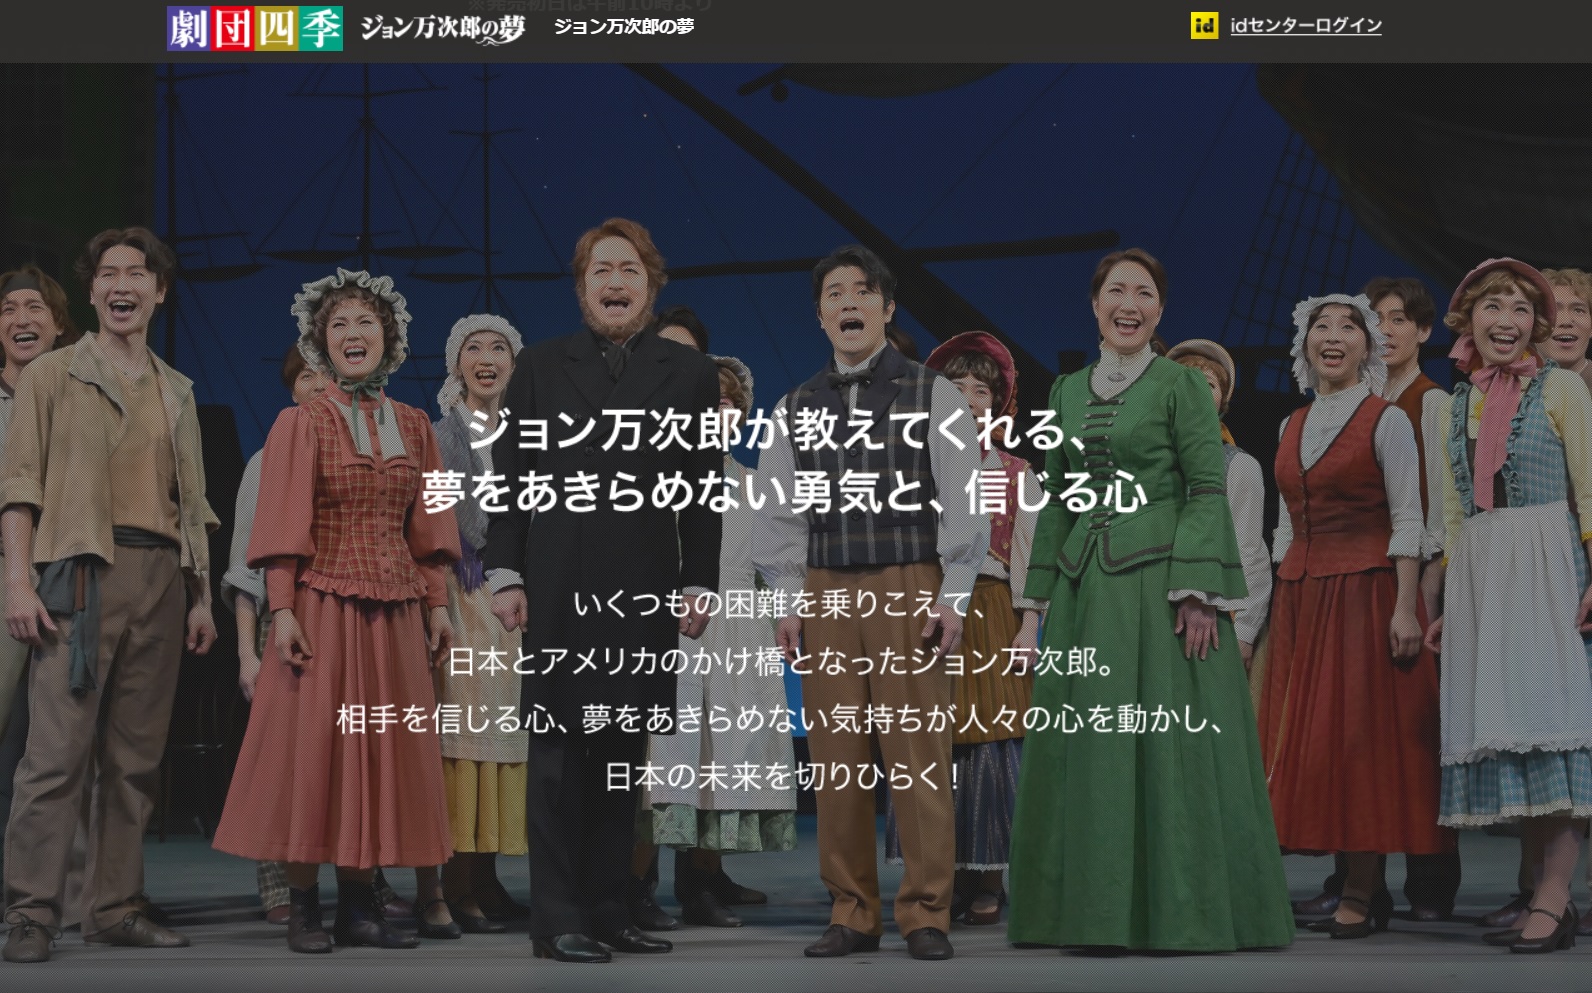 劇団四季「ジョン万次郎の夢」静岡公演チケット販売のお知らせ